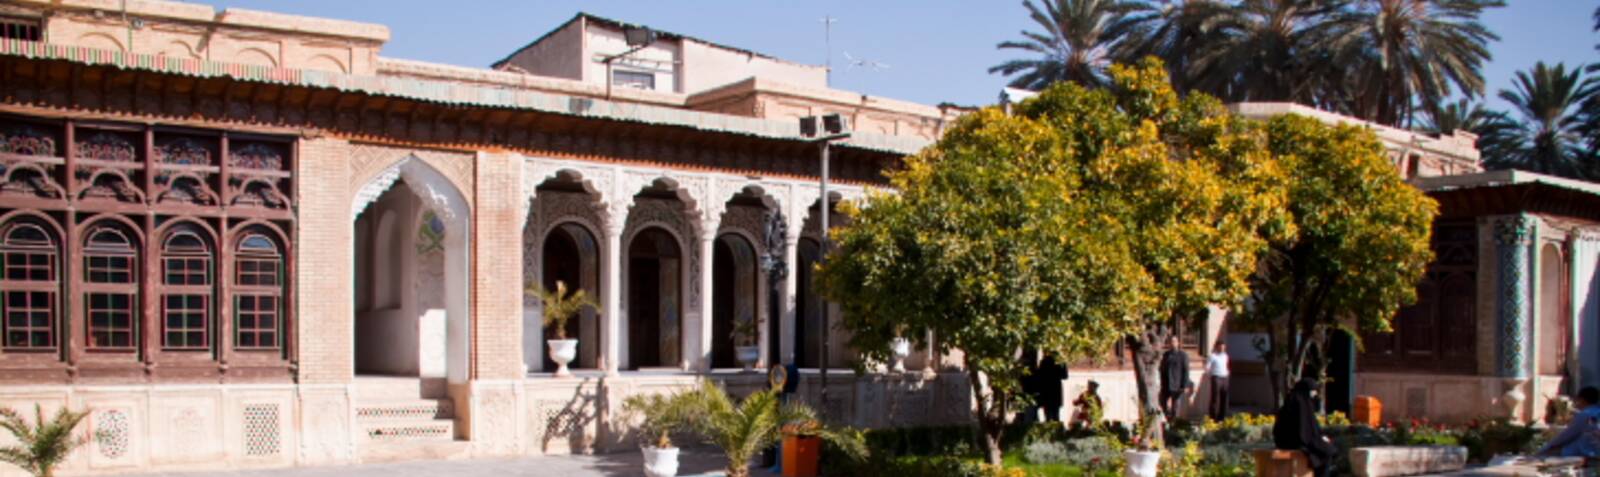 La Casa de Zinat ol-Molk, Shiraz